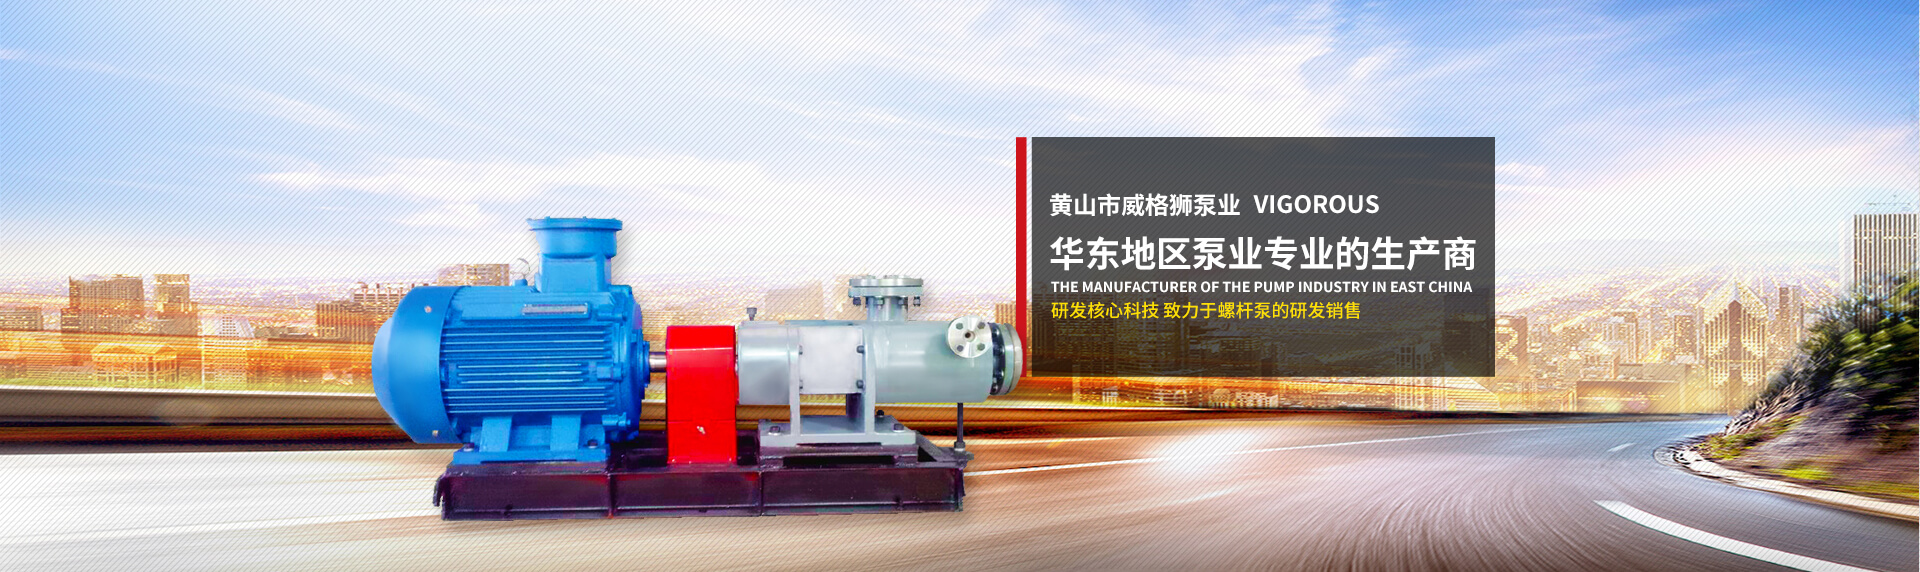 黄山市威格狮泵业  华东地区泵业专业的生产商